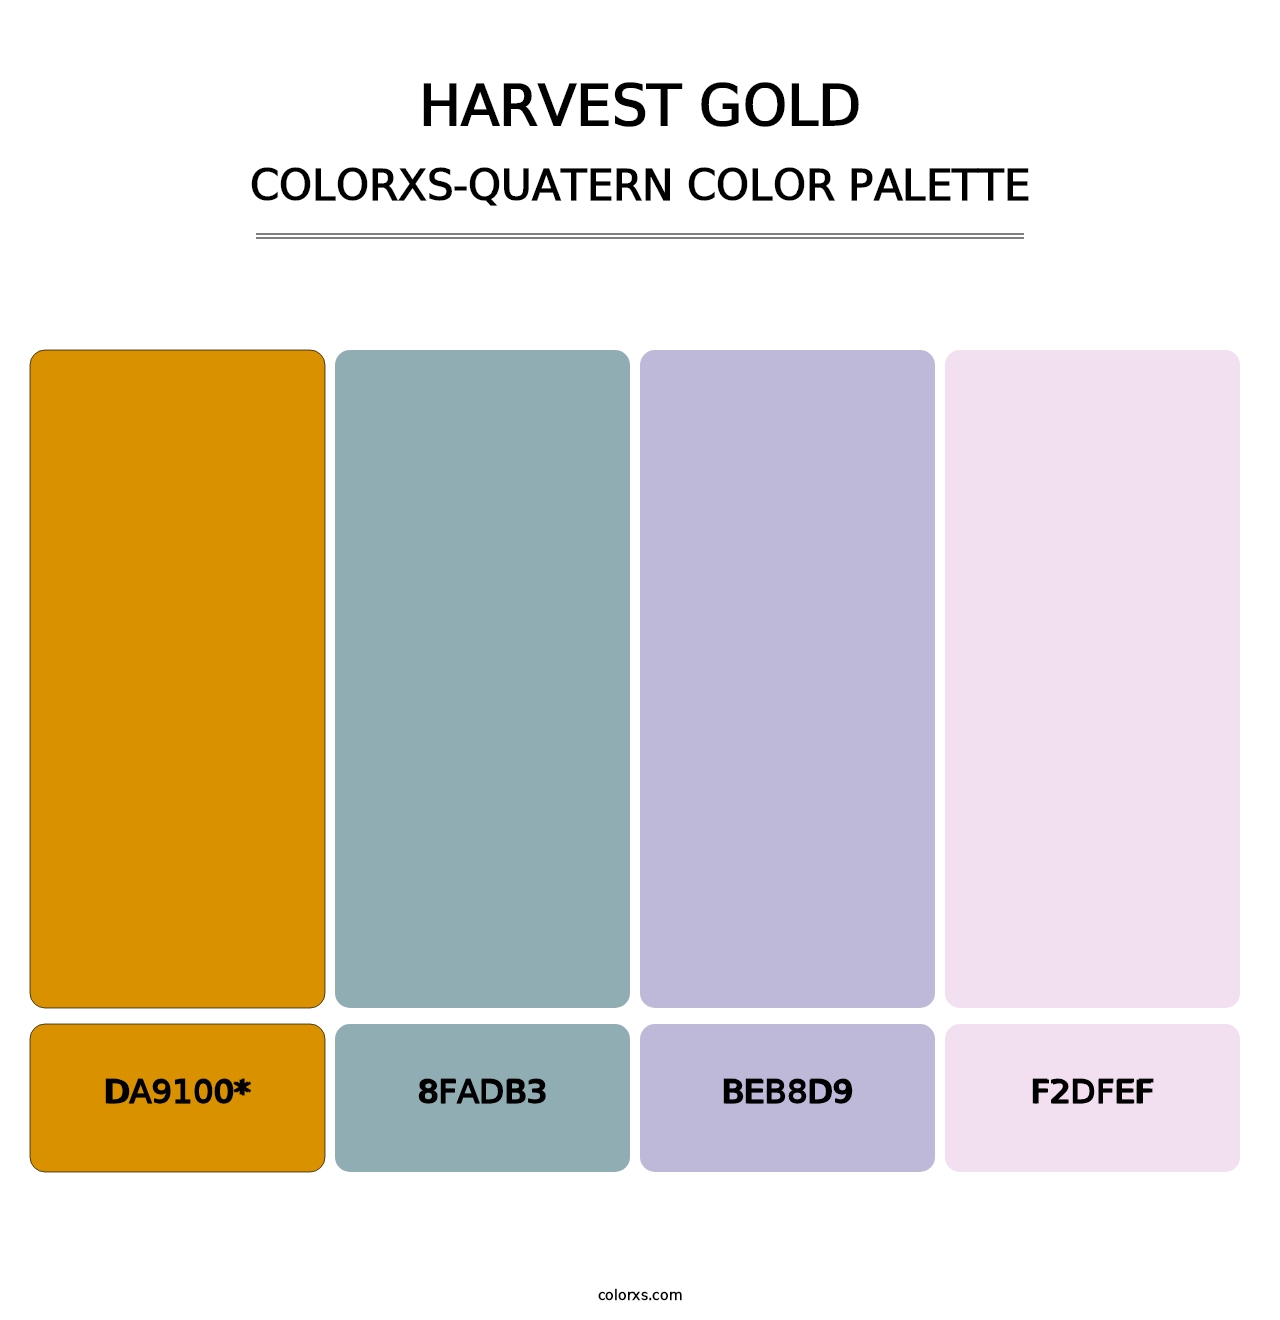 Harvest Gold - Colorxs Quatern Palette